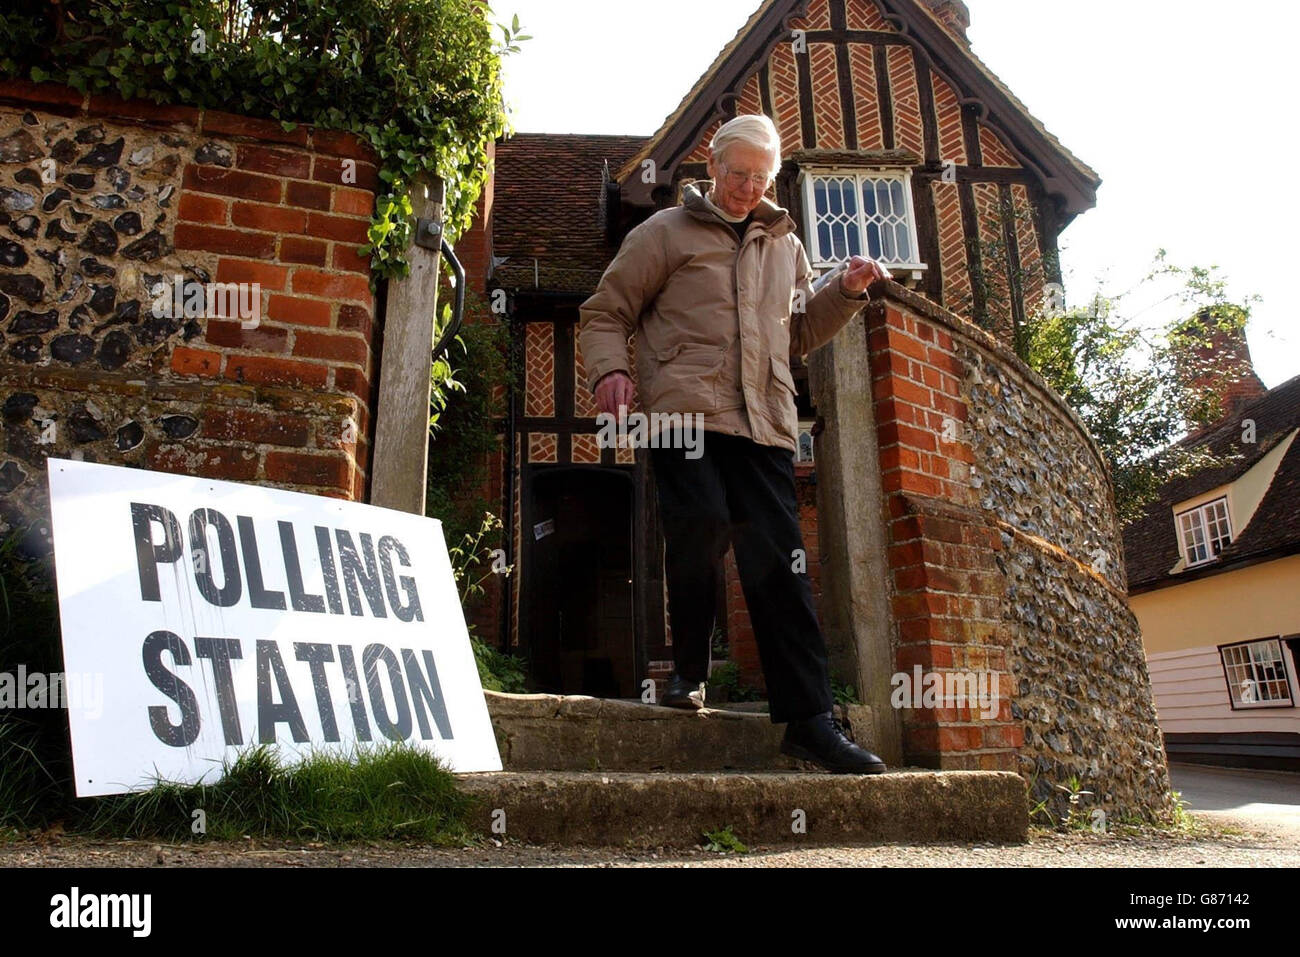 Un électeur non identifié quitte un bureau de vote dans le village de Brauauge, dans le Hertfordshire. Banque D'Images